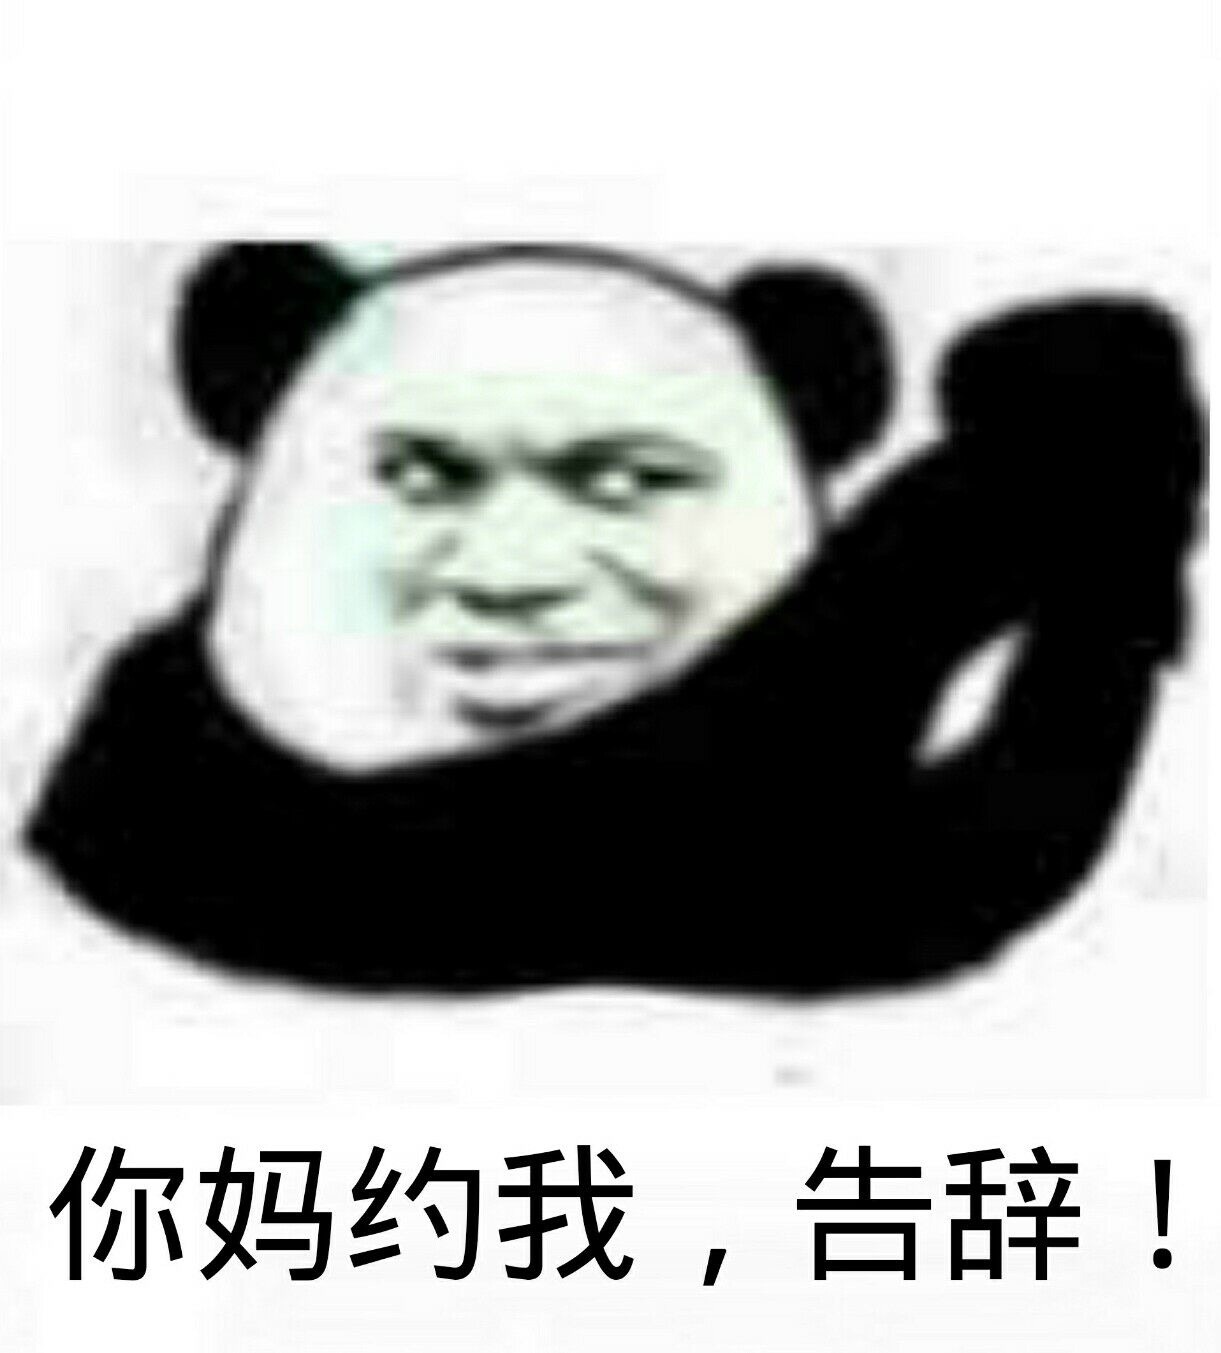 熊猫人我都想死你了表情包图片gif动图 - 求表情网,斗图从此不求人!